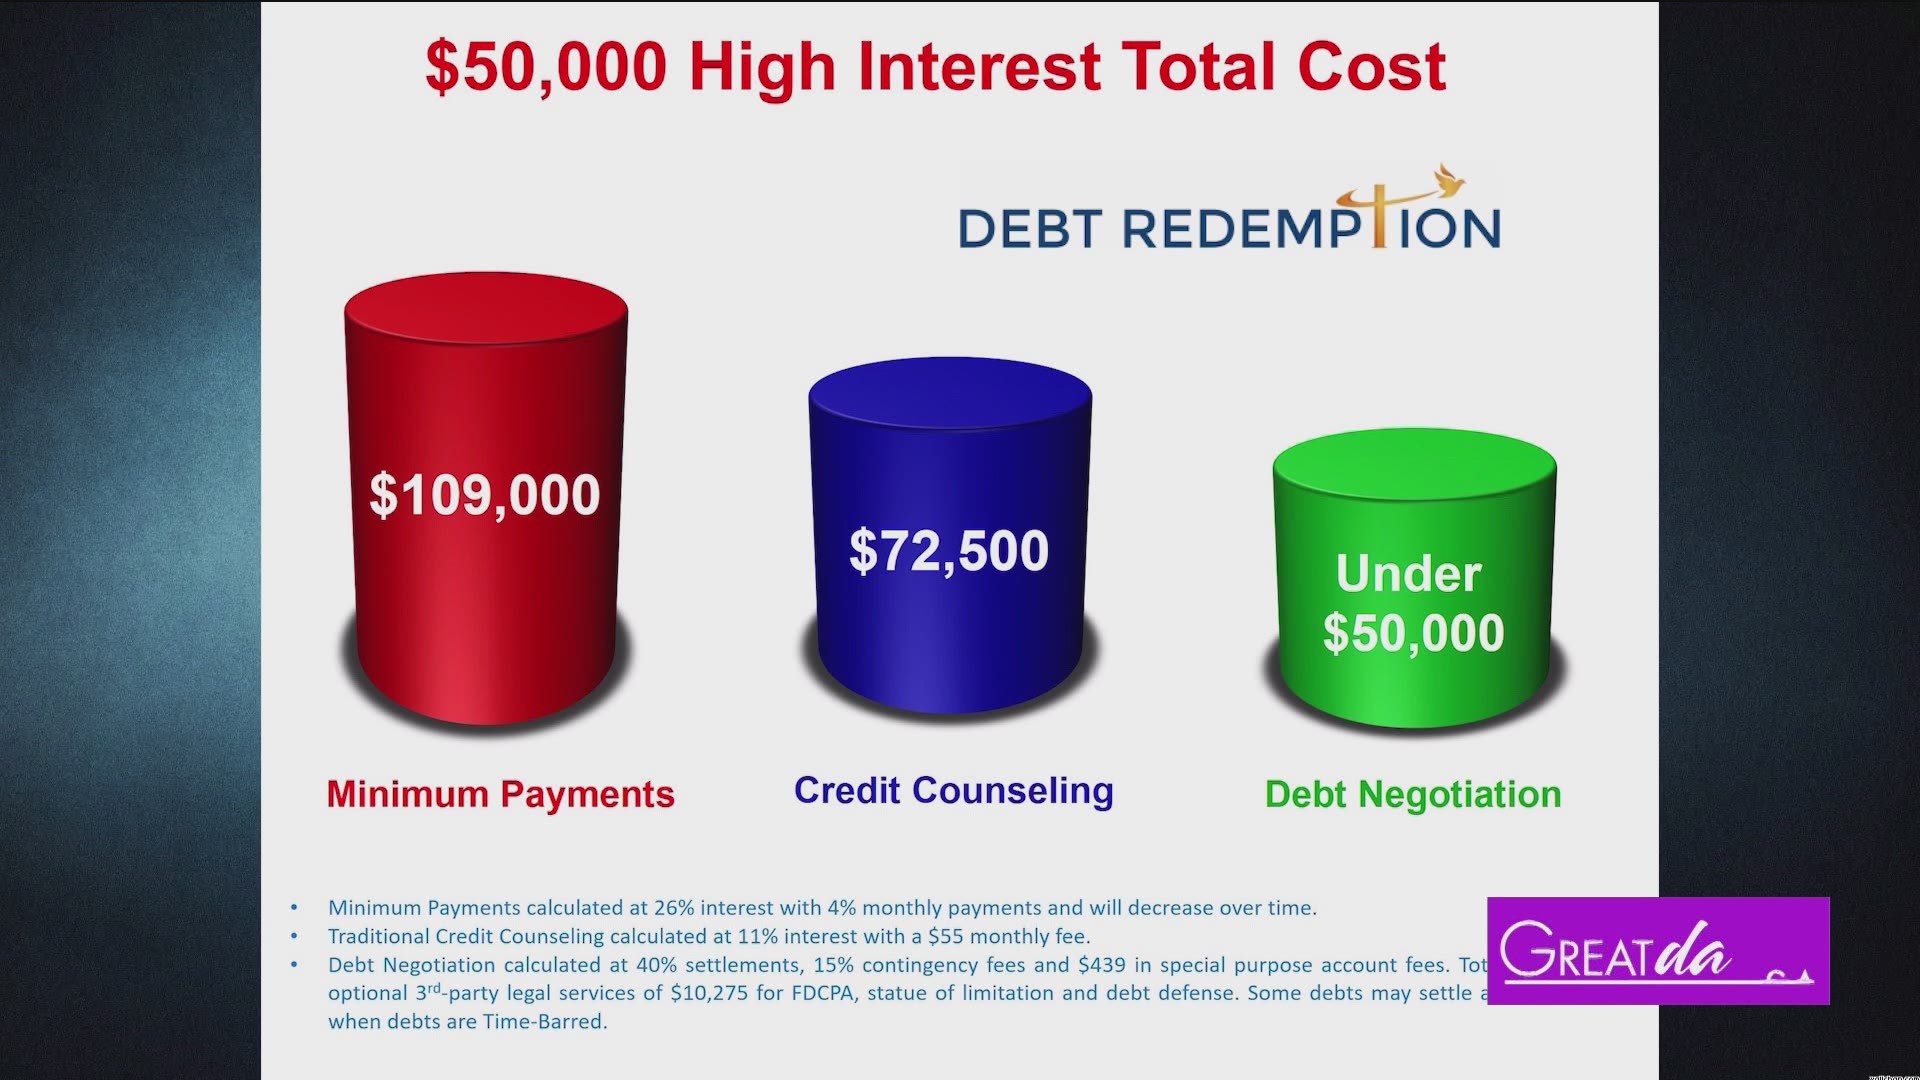 Debt Redemption